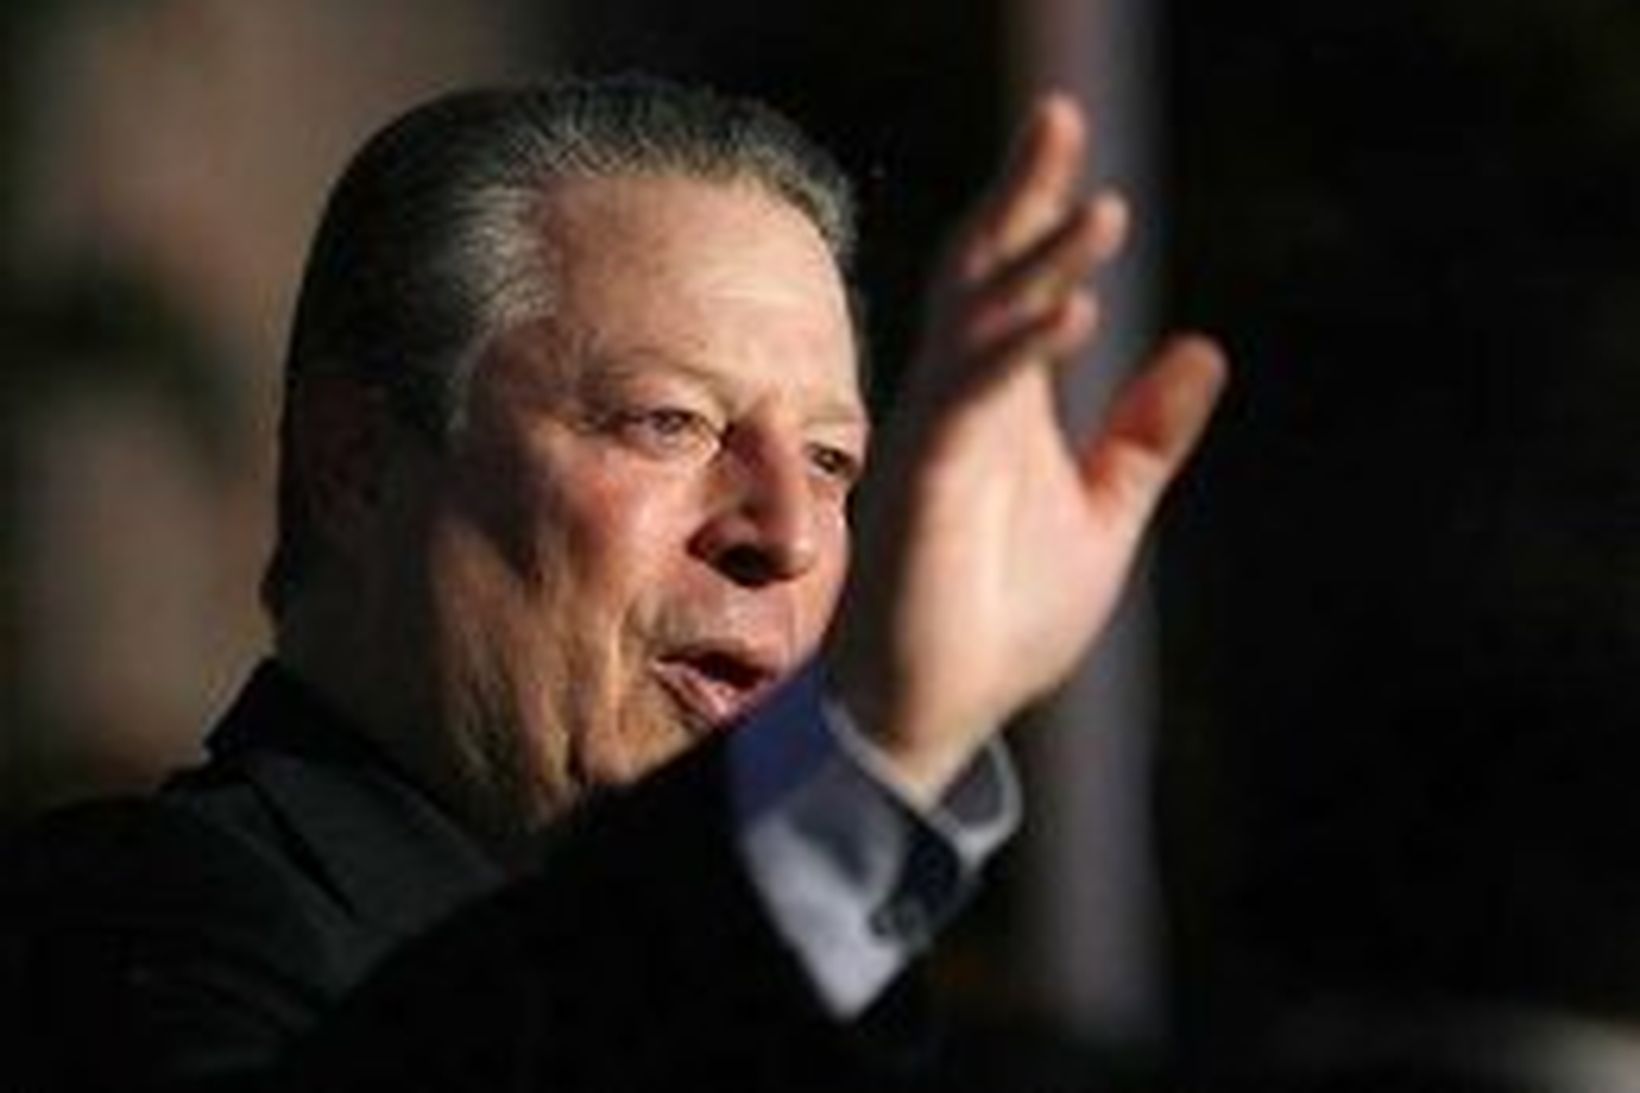 Al Gore.